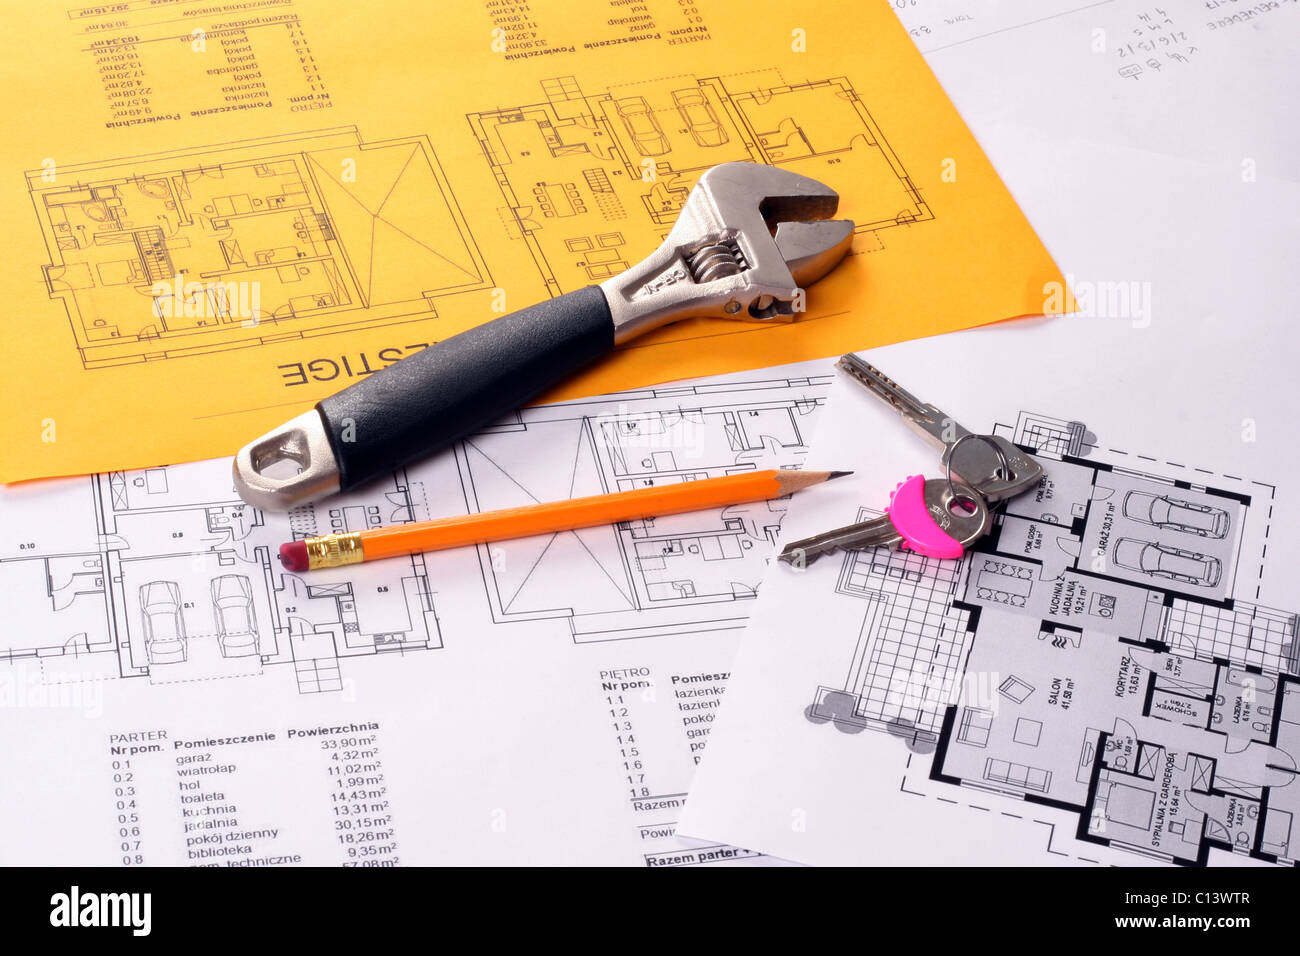 Werkzeuge wie Schraubenschlüssel, Schlüssel und Bleistift Hauspläne Baupläne auf weißen und gelben Papier gedruckt Stockfoto